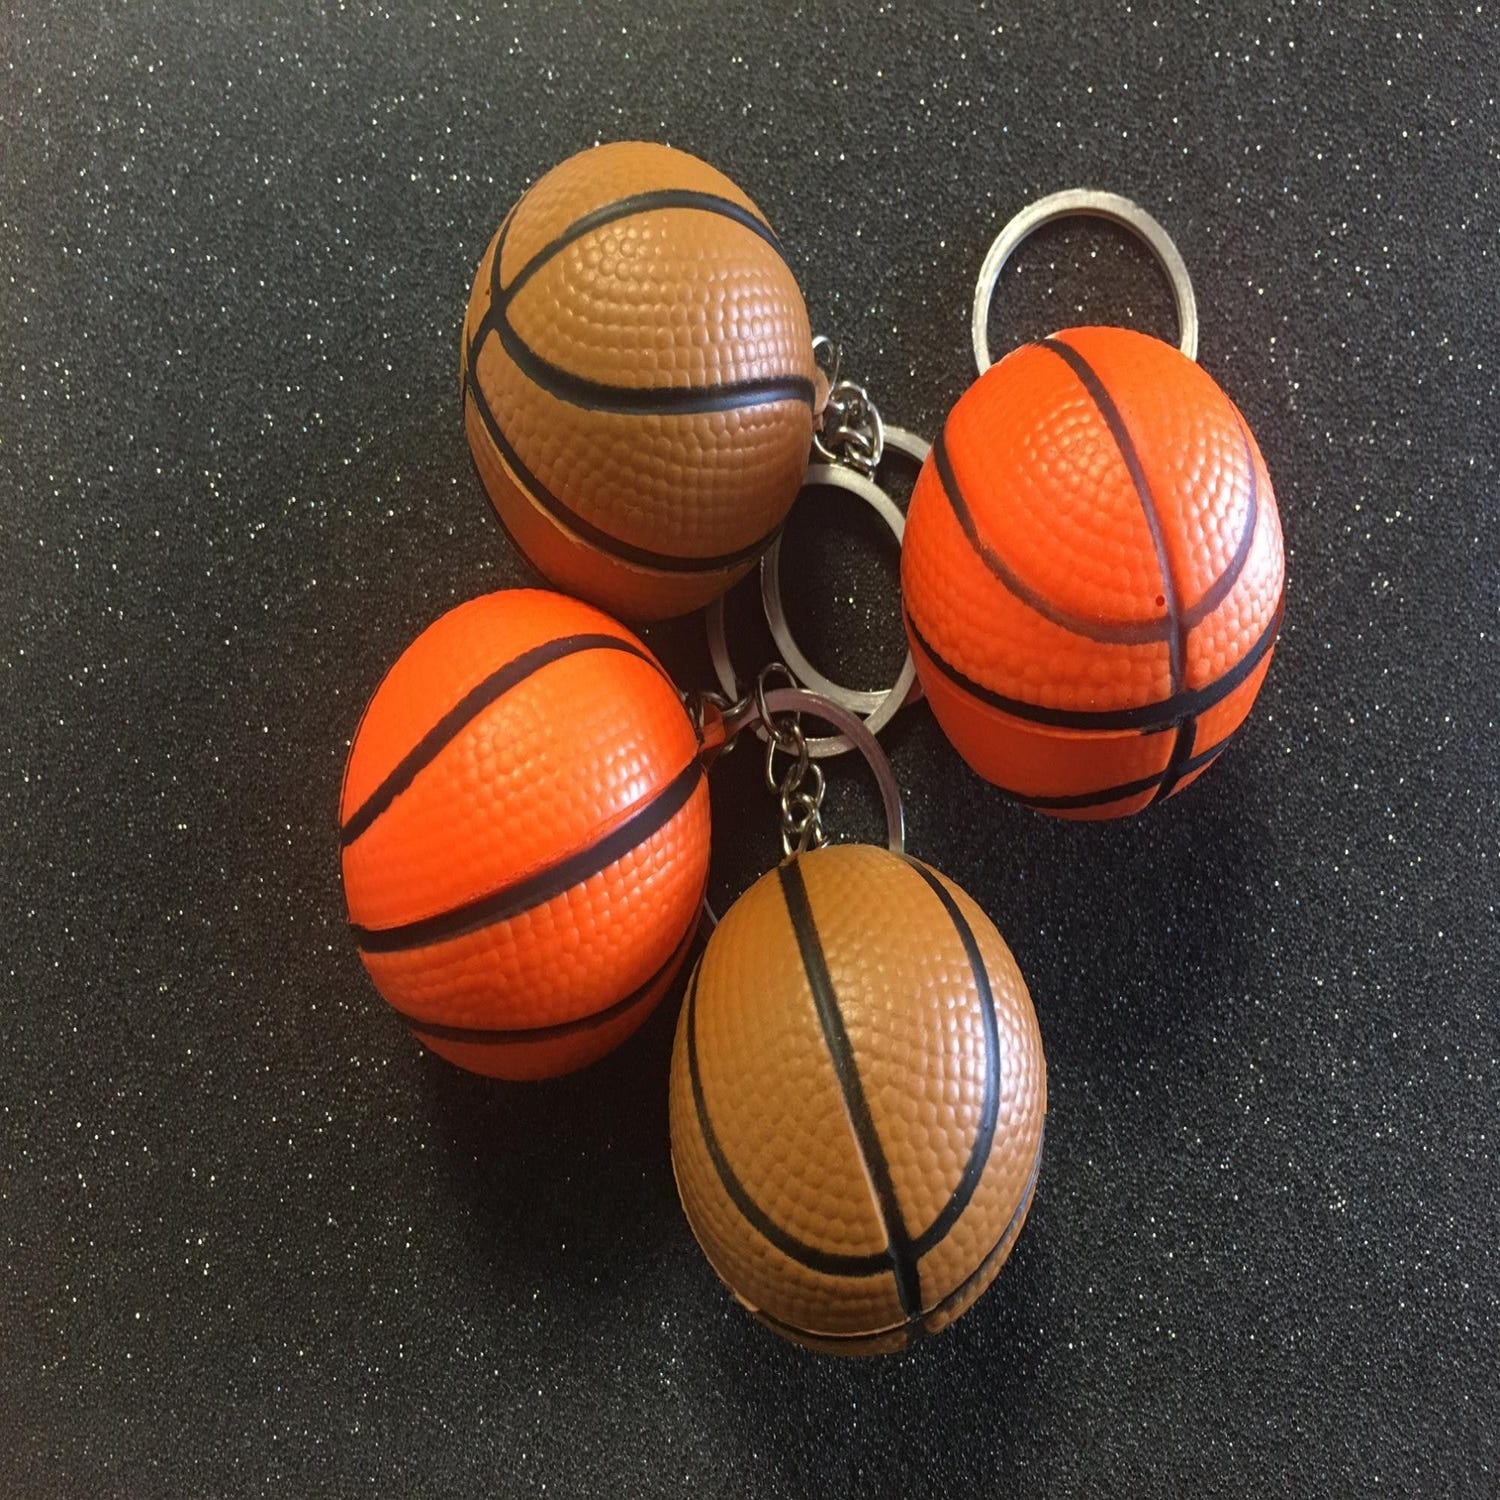 Porte-clé ballon bois basket